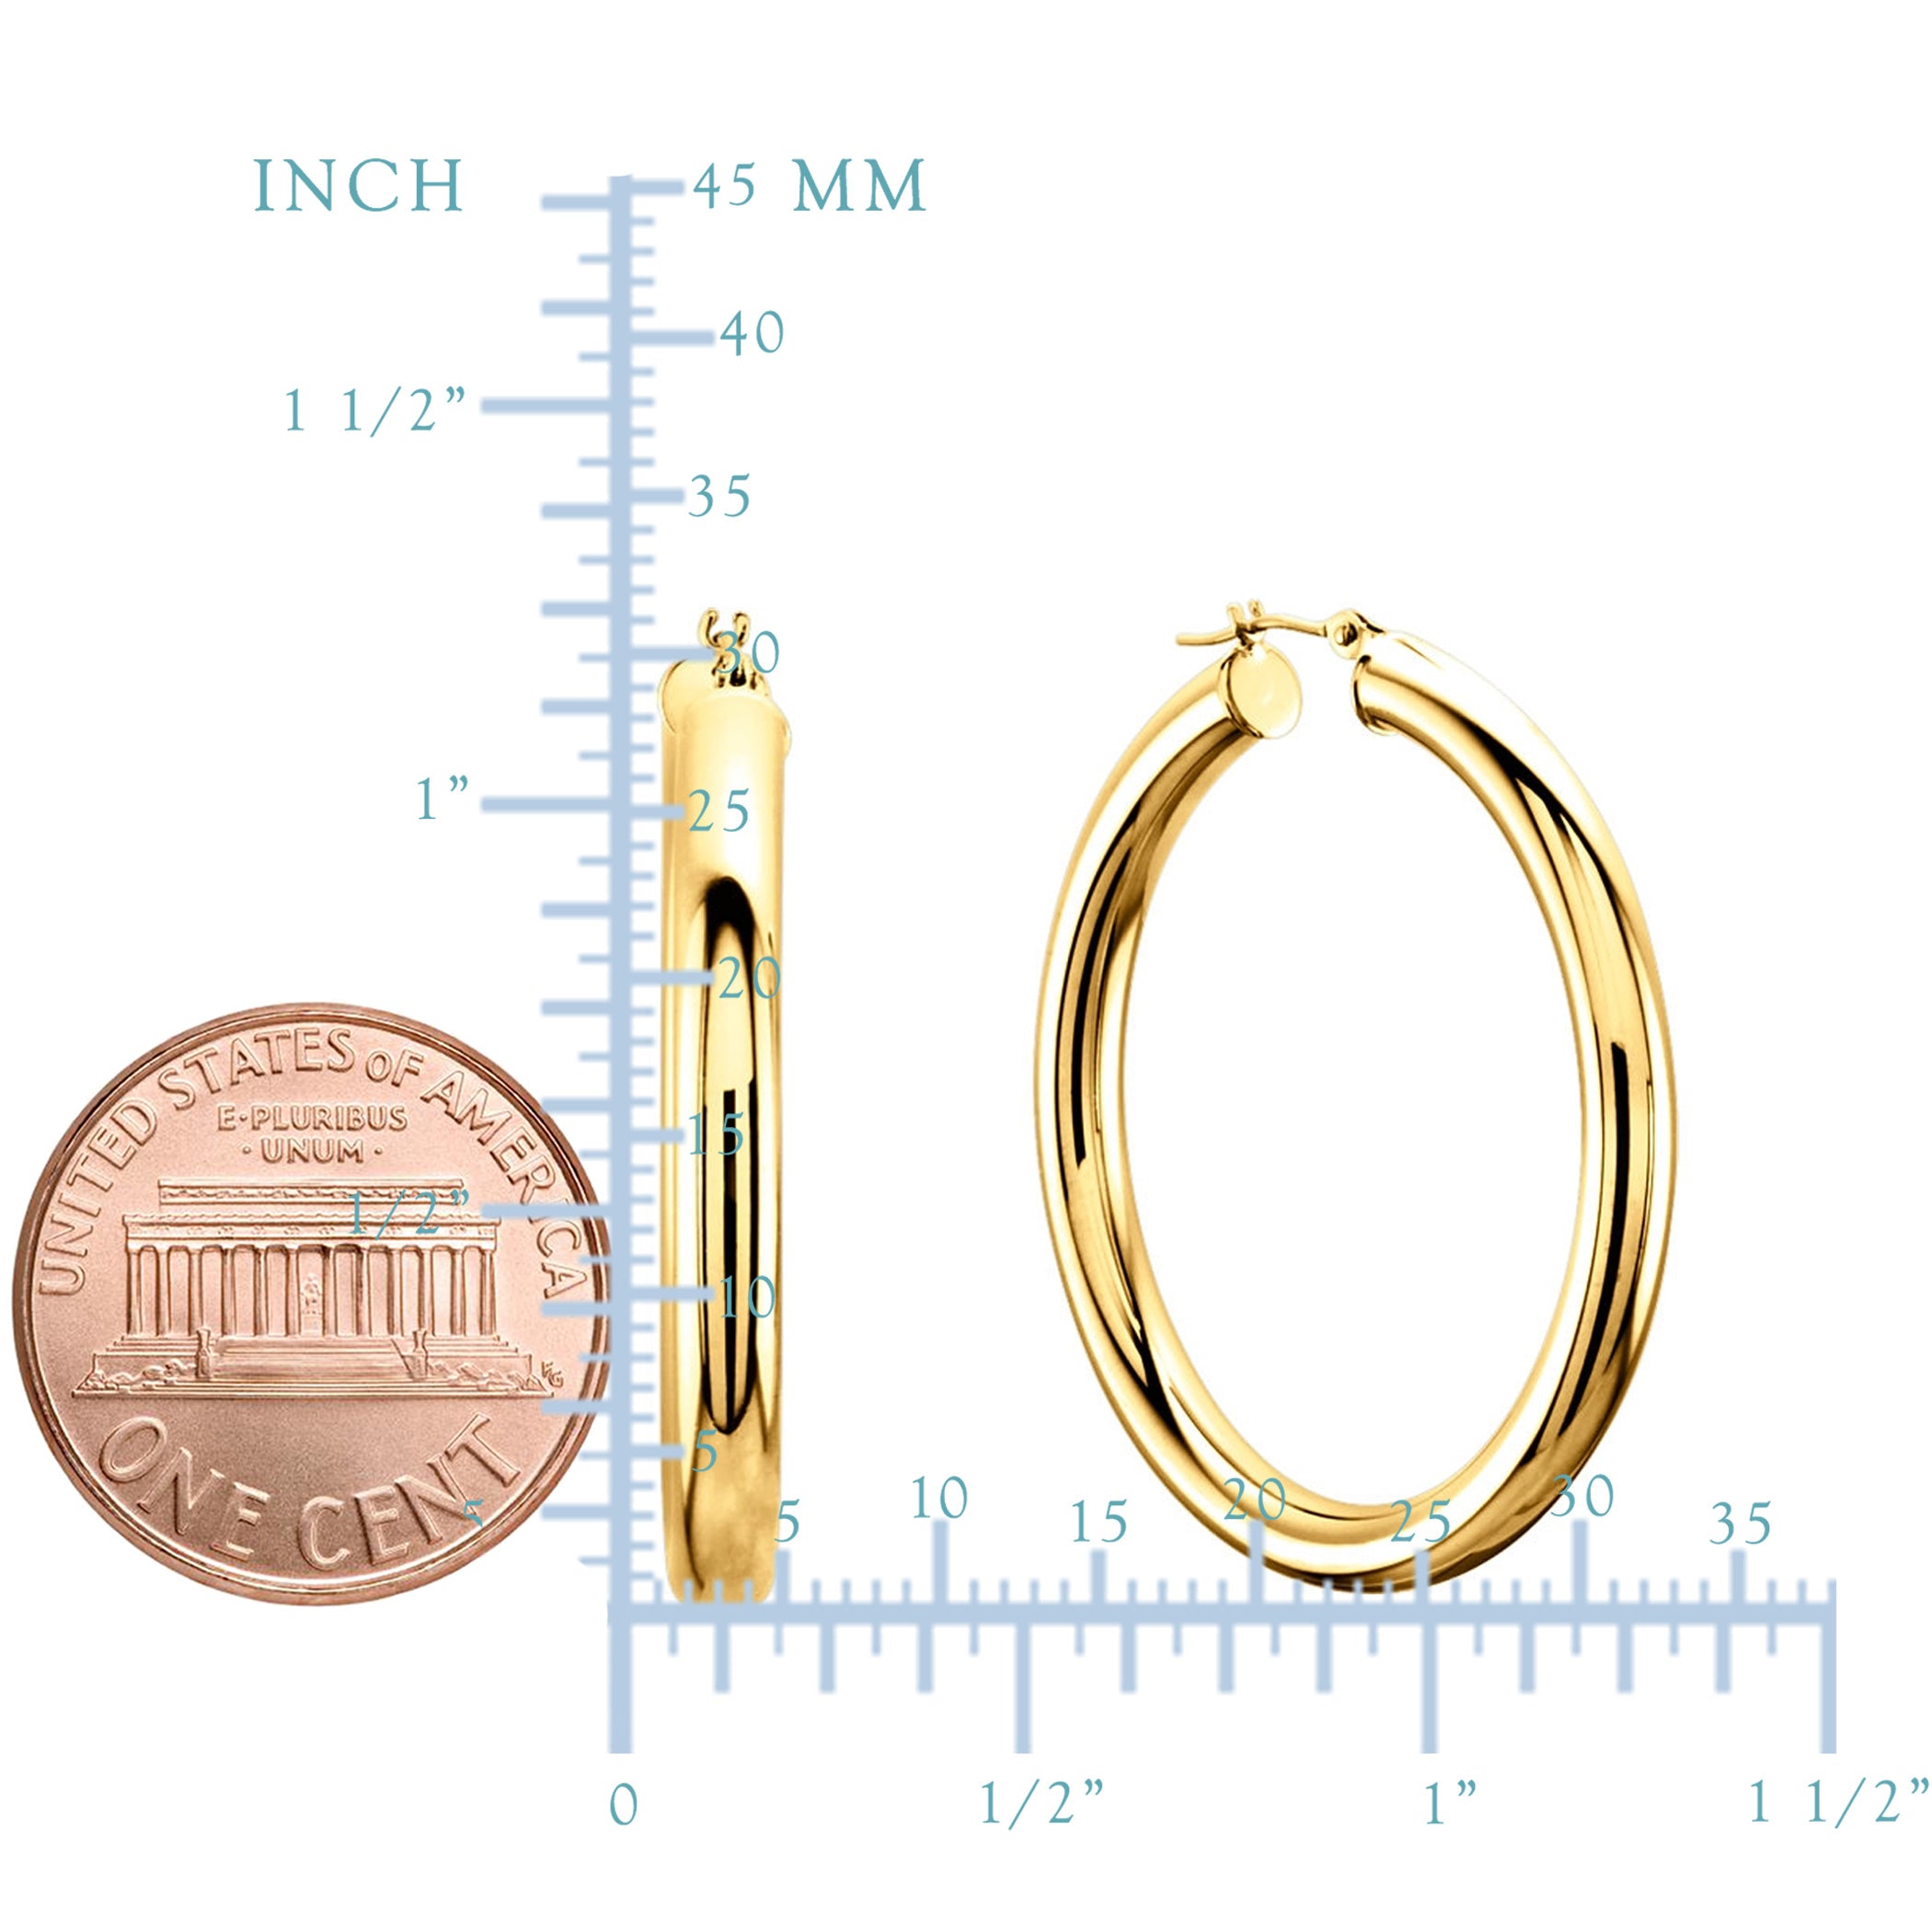 14K gul guld 3MM skinnende runde rør bøjle øreringe fine designer smykker til mænd og kvinder